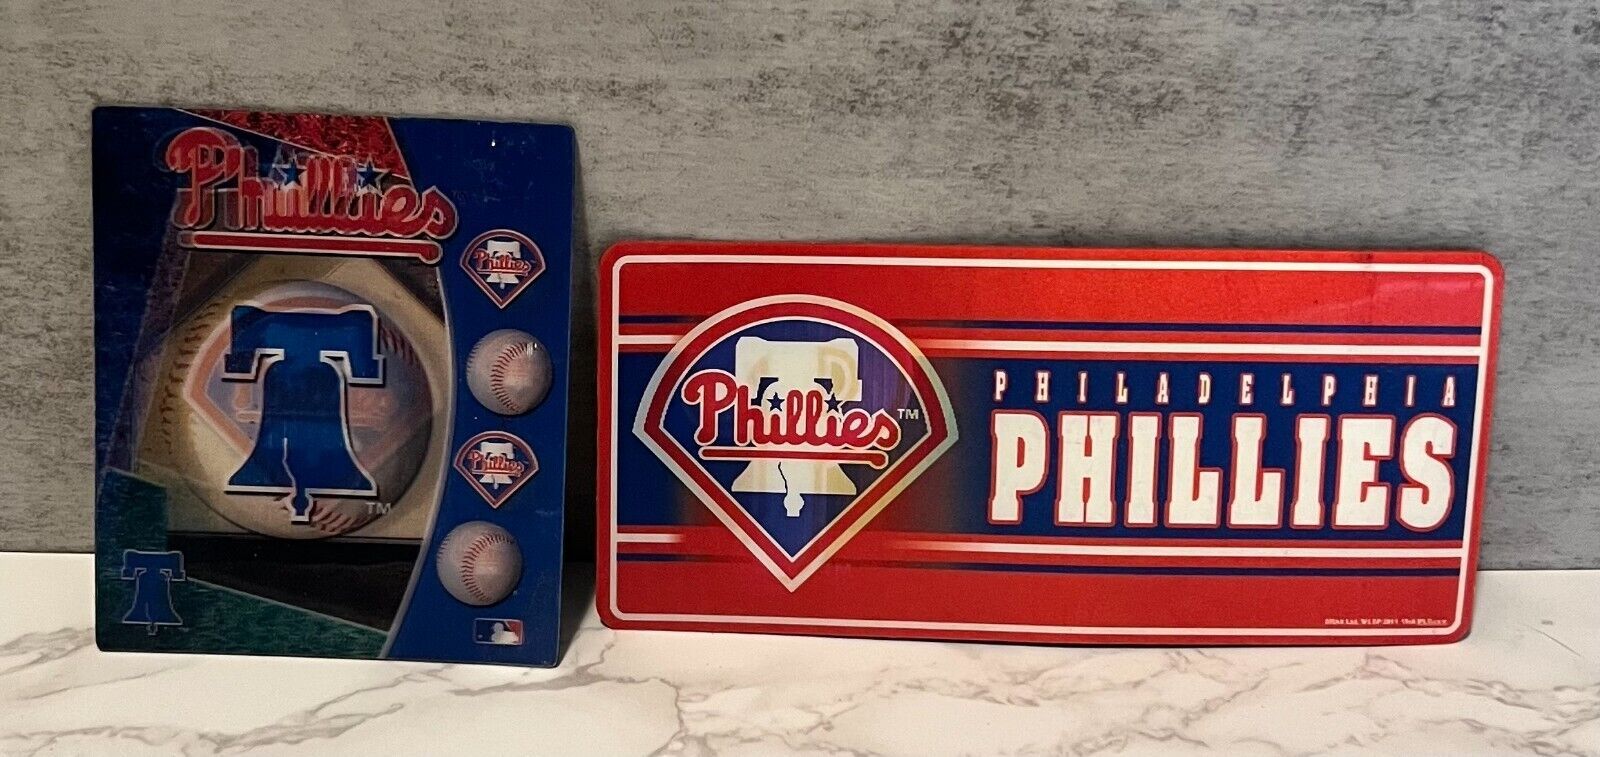 Primary image for Philadelphia Phillies Lenticular Magnets Lot of (2) MLB Baseball